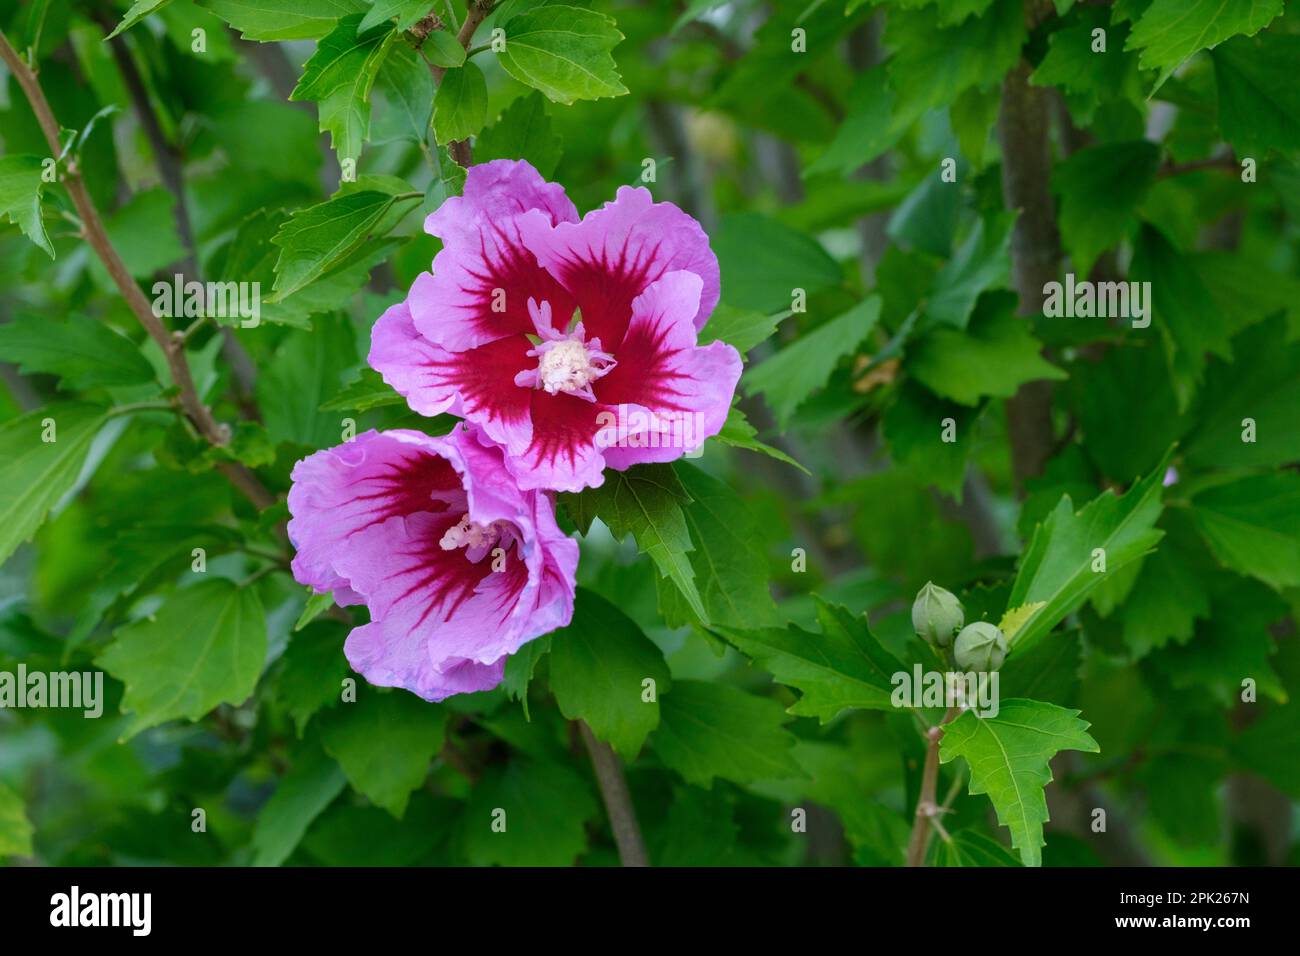 Hibiscus syriacus Gandini Santiago, albero hollyhock, fiori lilla-viola, centro rosso con venature Foto Stock